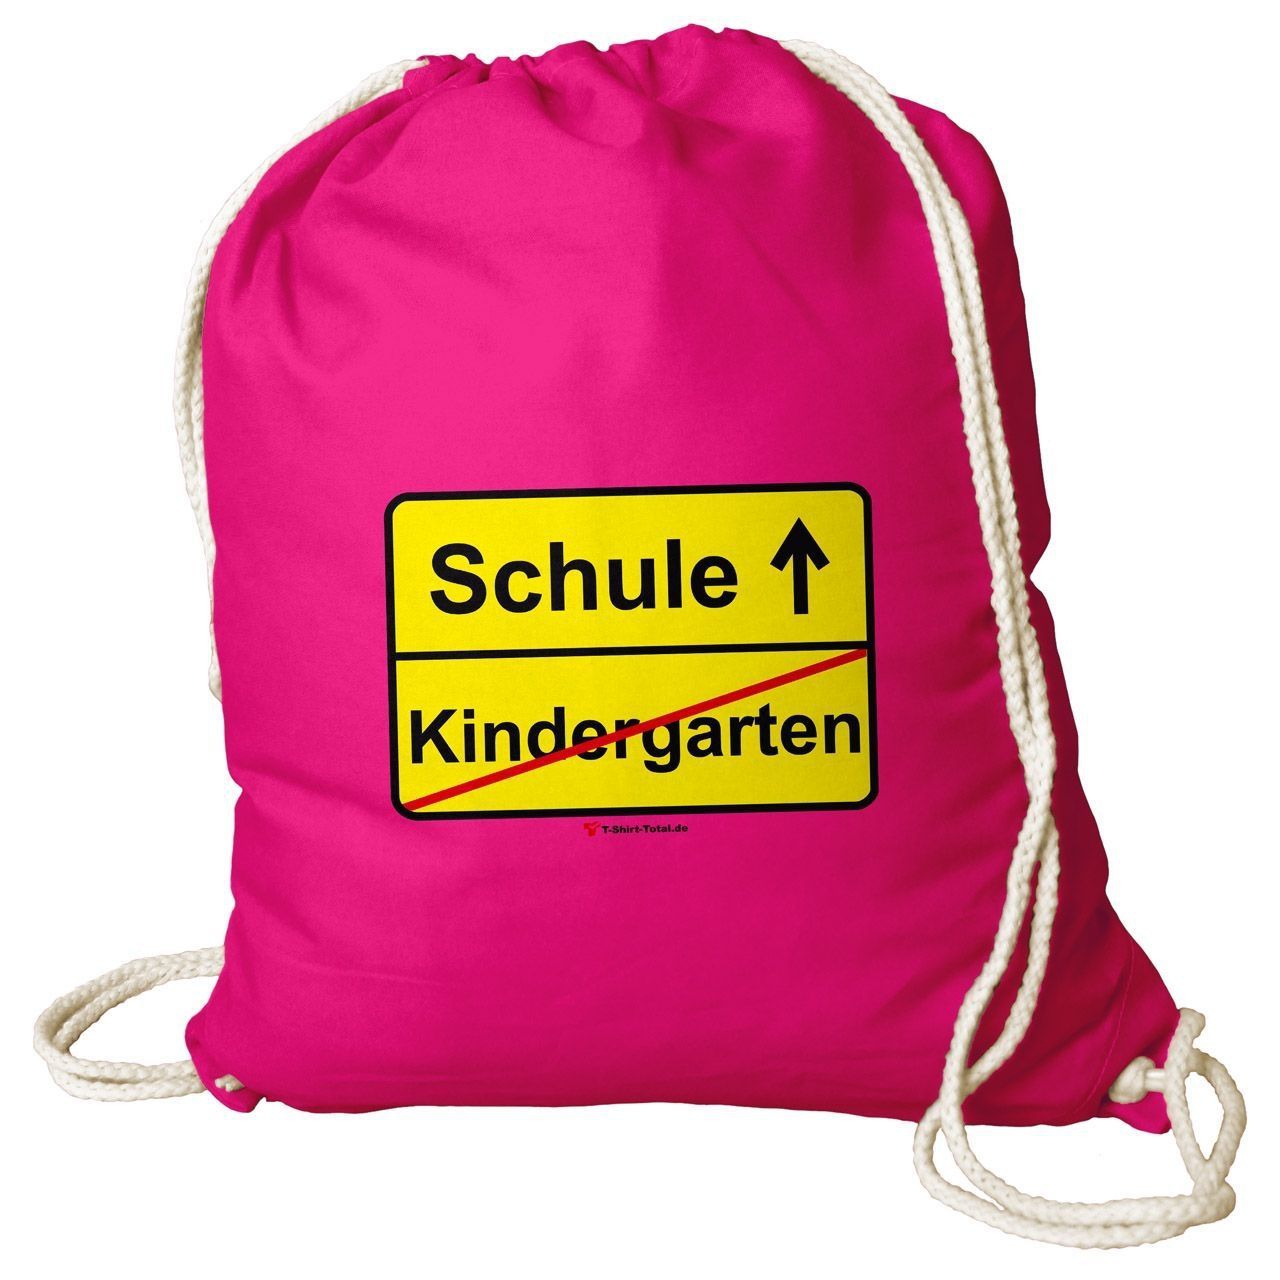 Kindergarten Schule Rucksack Beutel pink